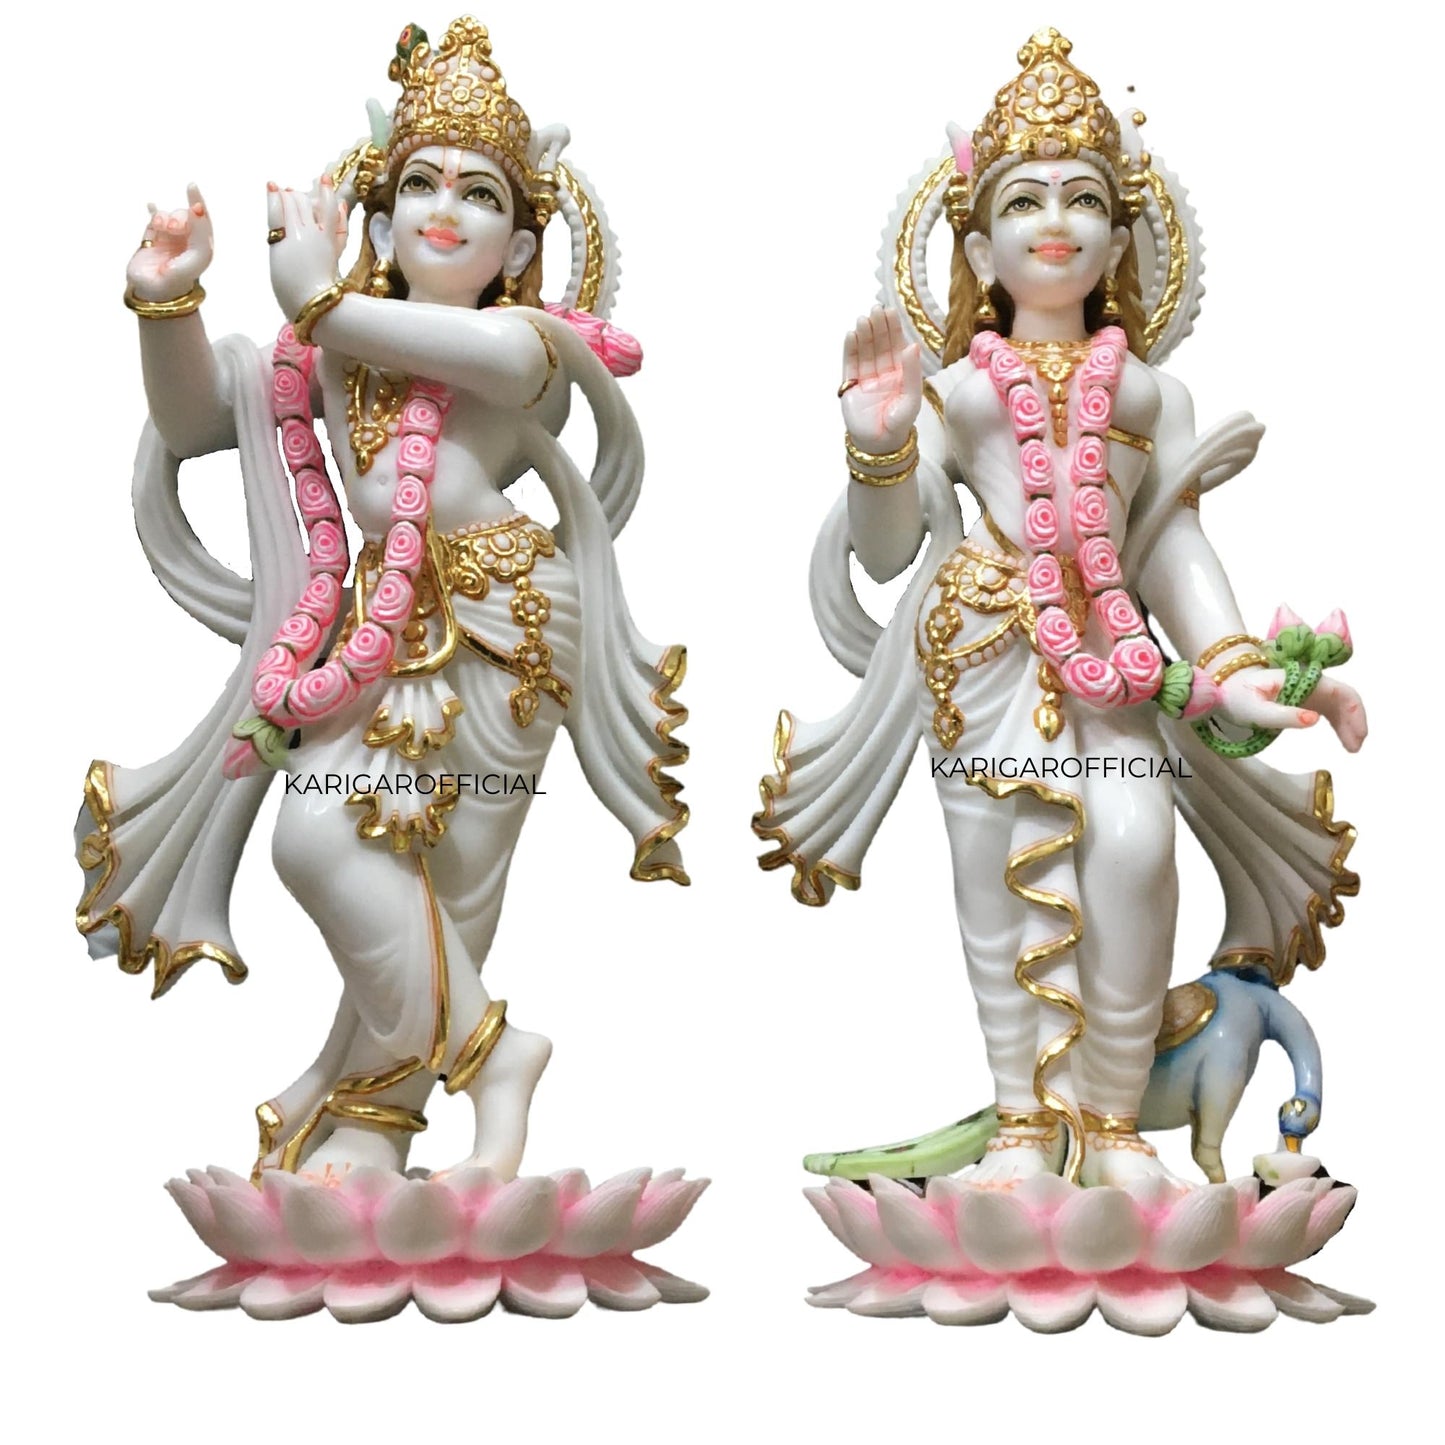 Estatua de Radha Krishna de pie sobre flores de loto, Murti grande de 24 pulgadas en pan de oro, detalles en oro blanco y rosa, ídolo de Radha Krishna, pareja divina hindú, regalo de inauguración de la boda en el templo del hogar